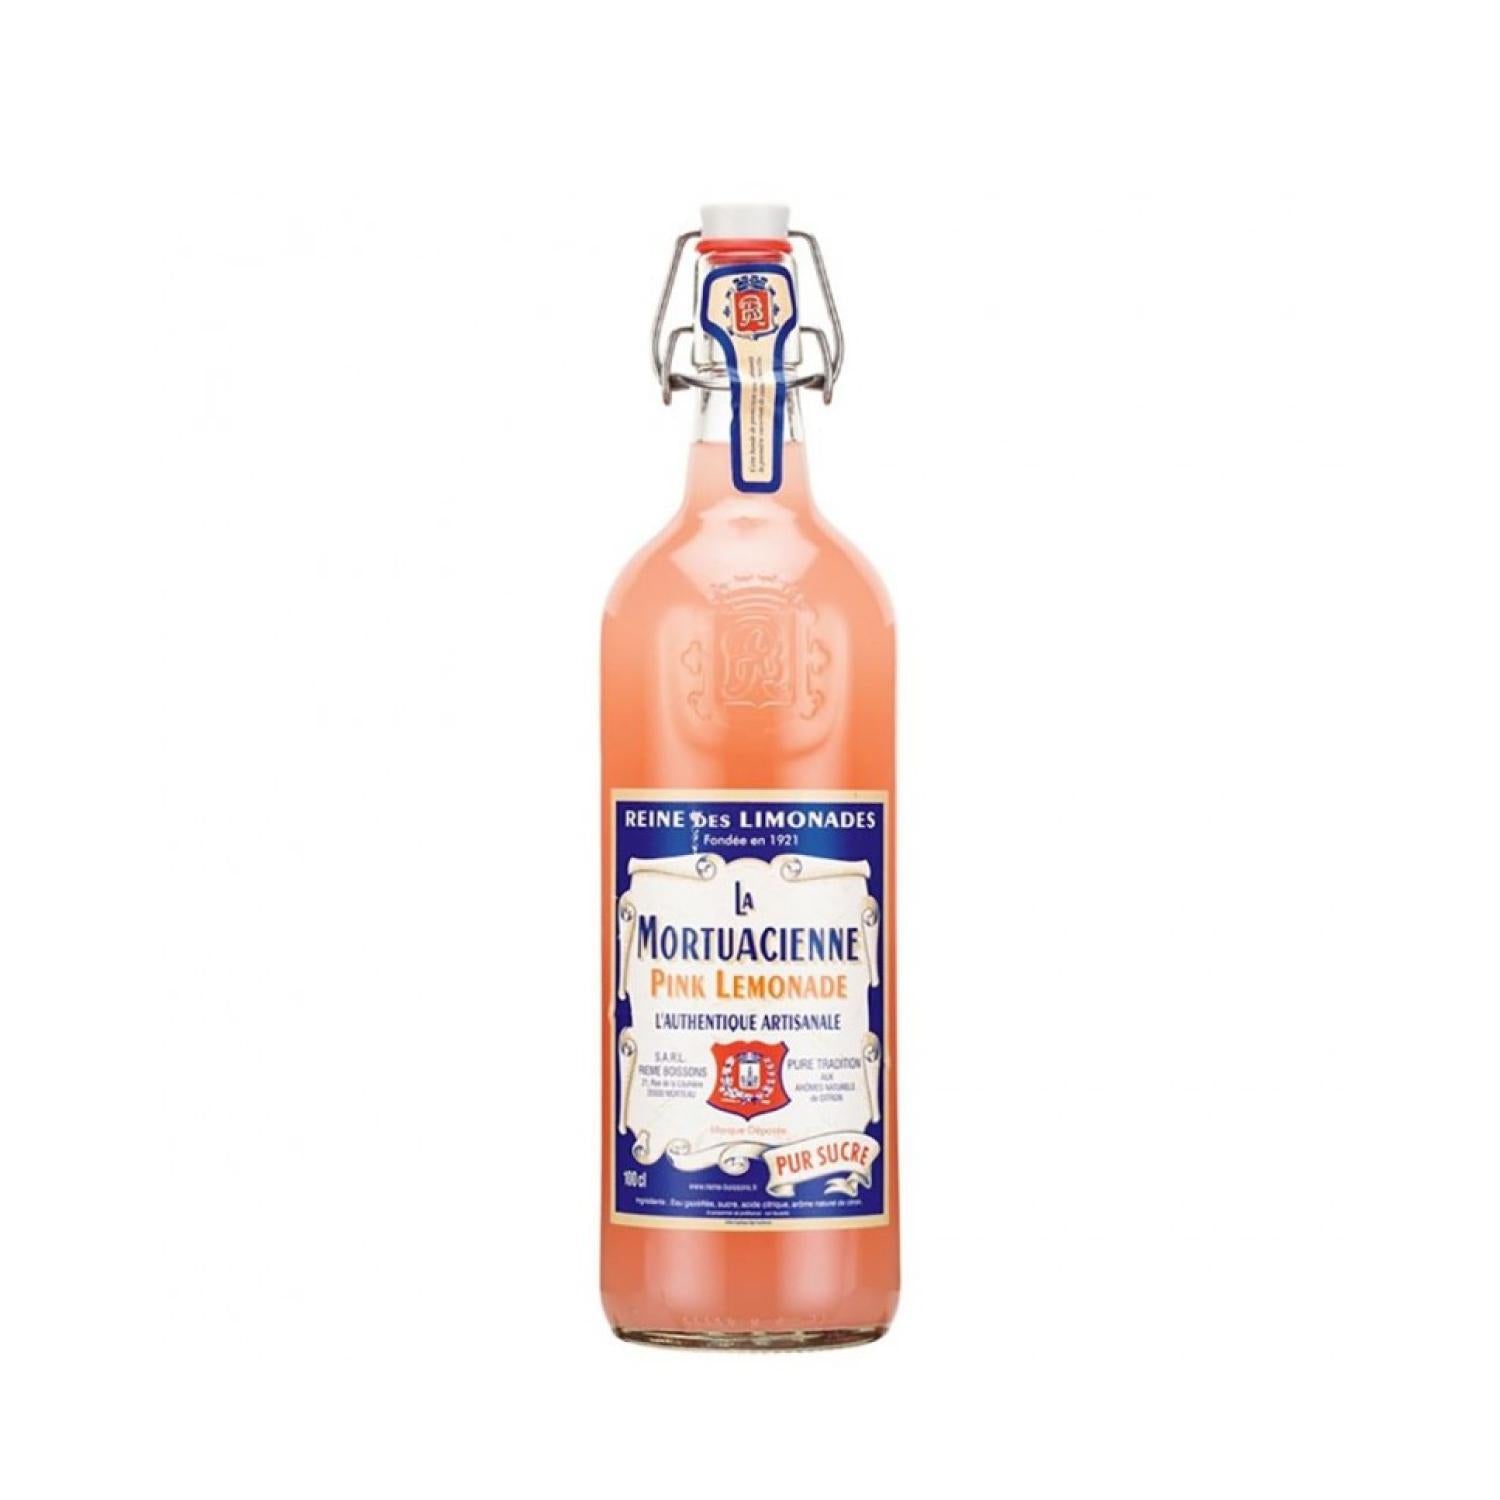 La Mortuacienne - Pink Lemonade